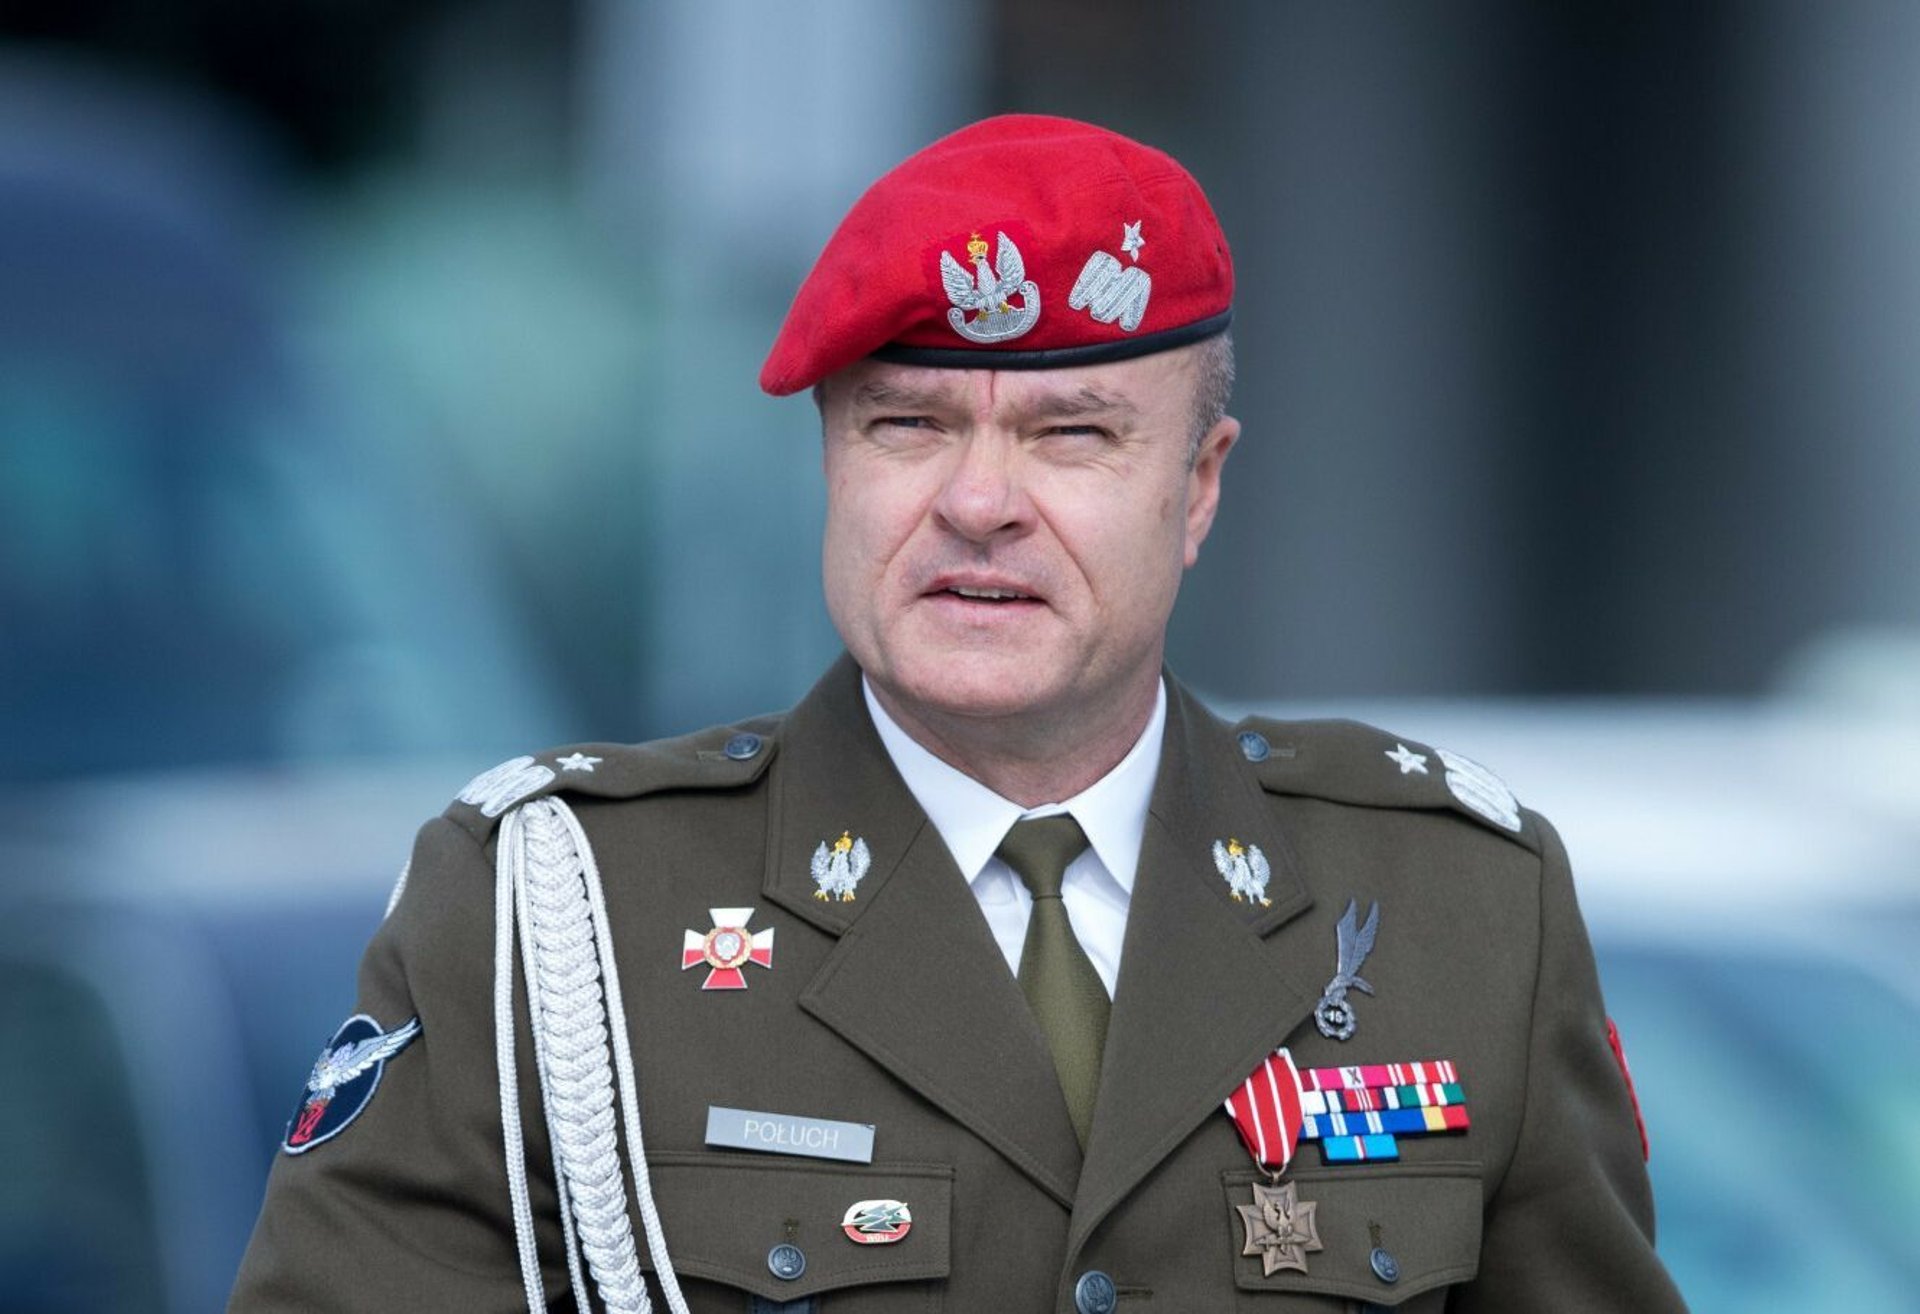 Gen. Tomasz Połuch